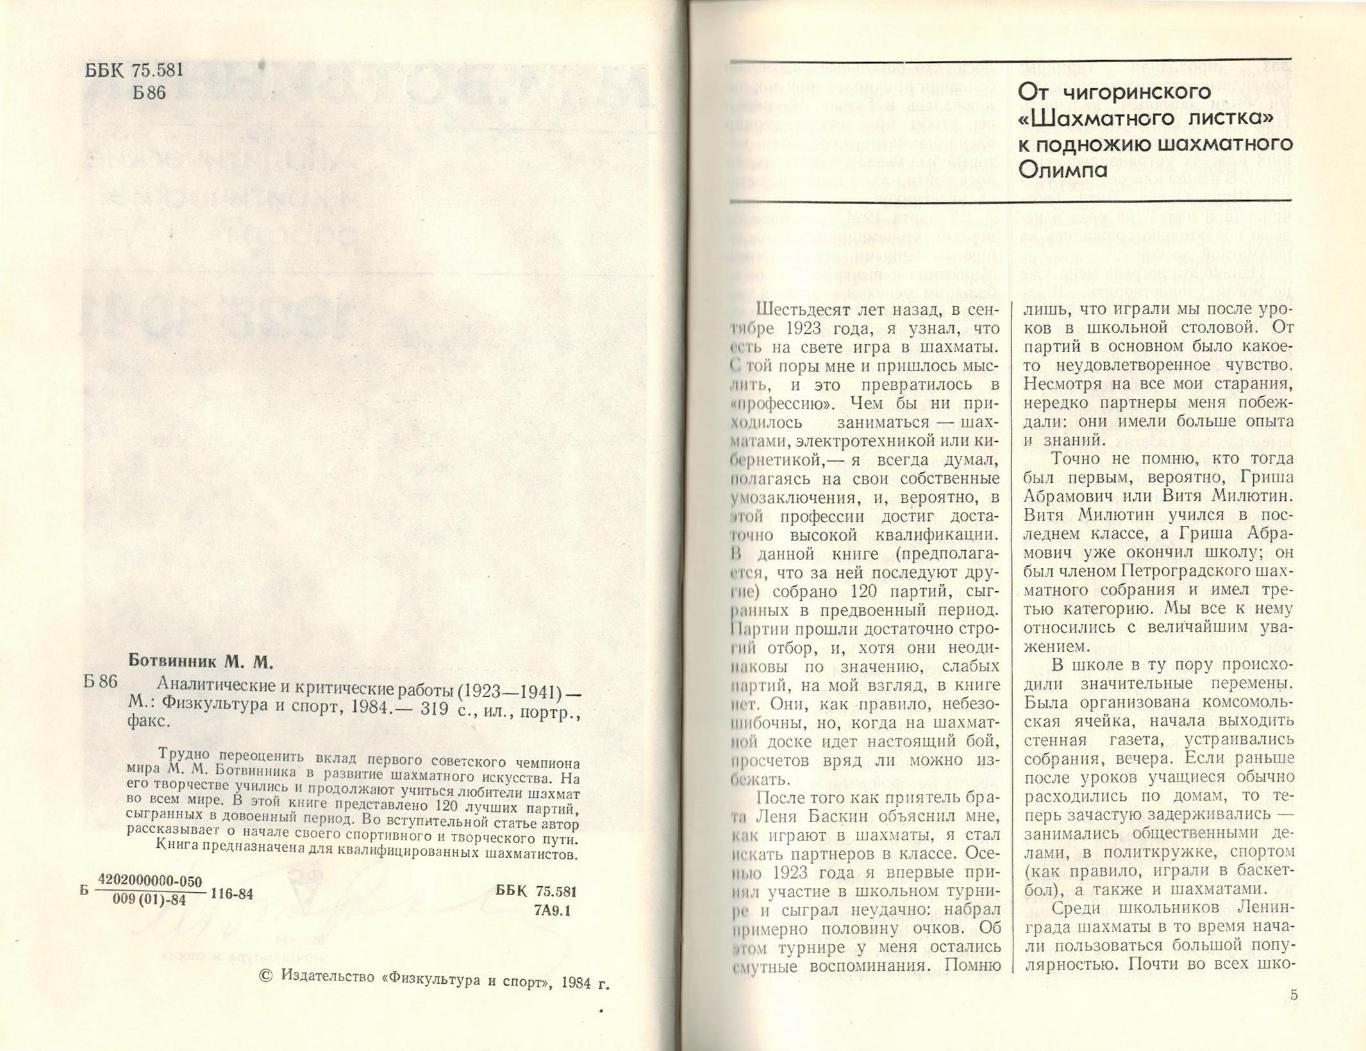 М.М. Ботвинник Аналитические и критические работы 1923-1941 (120 партий) 1984 1